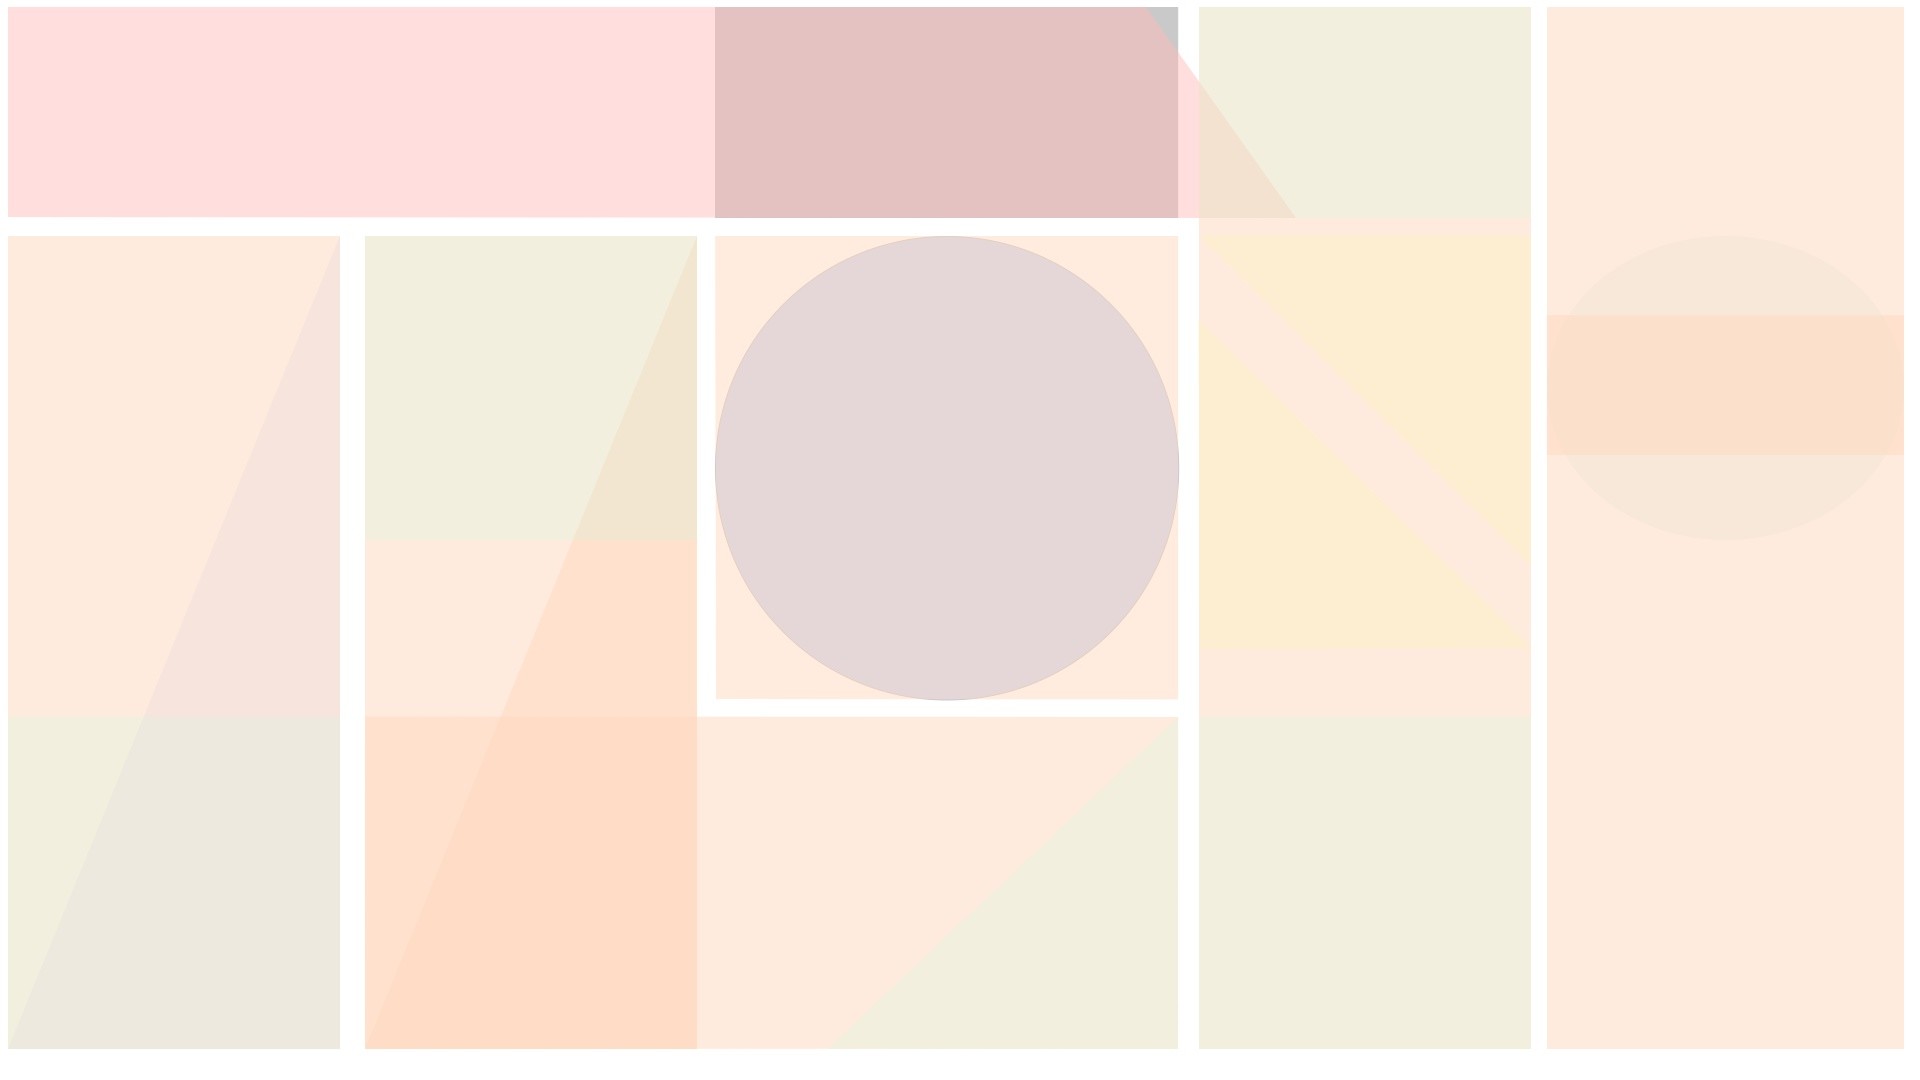 1920x1080 Blank pastel mint pink peach lilac geometric segment desktop organizer  wallpaper background | Pretty Prints â¡ Wallpaper/Backgrounds | Pinterest |  Desktop ...